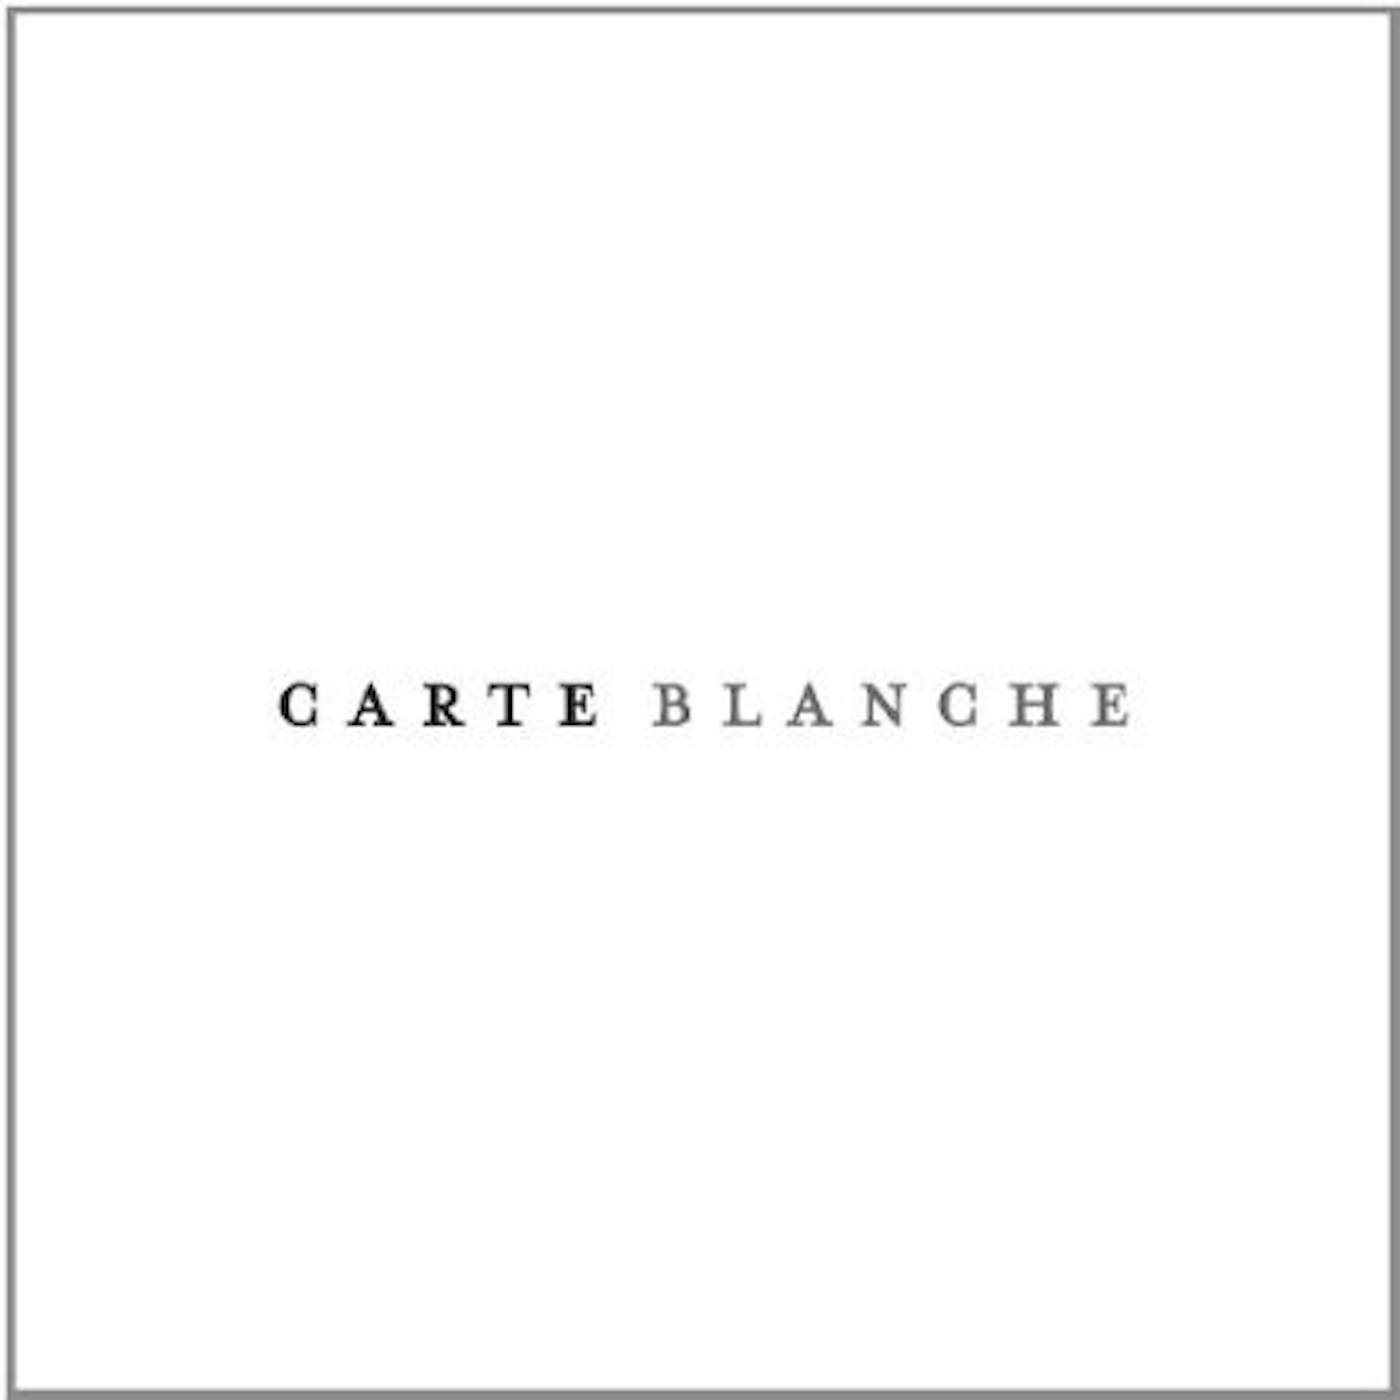 CARTE BLANCHE CD